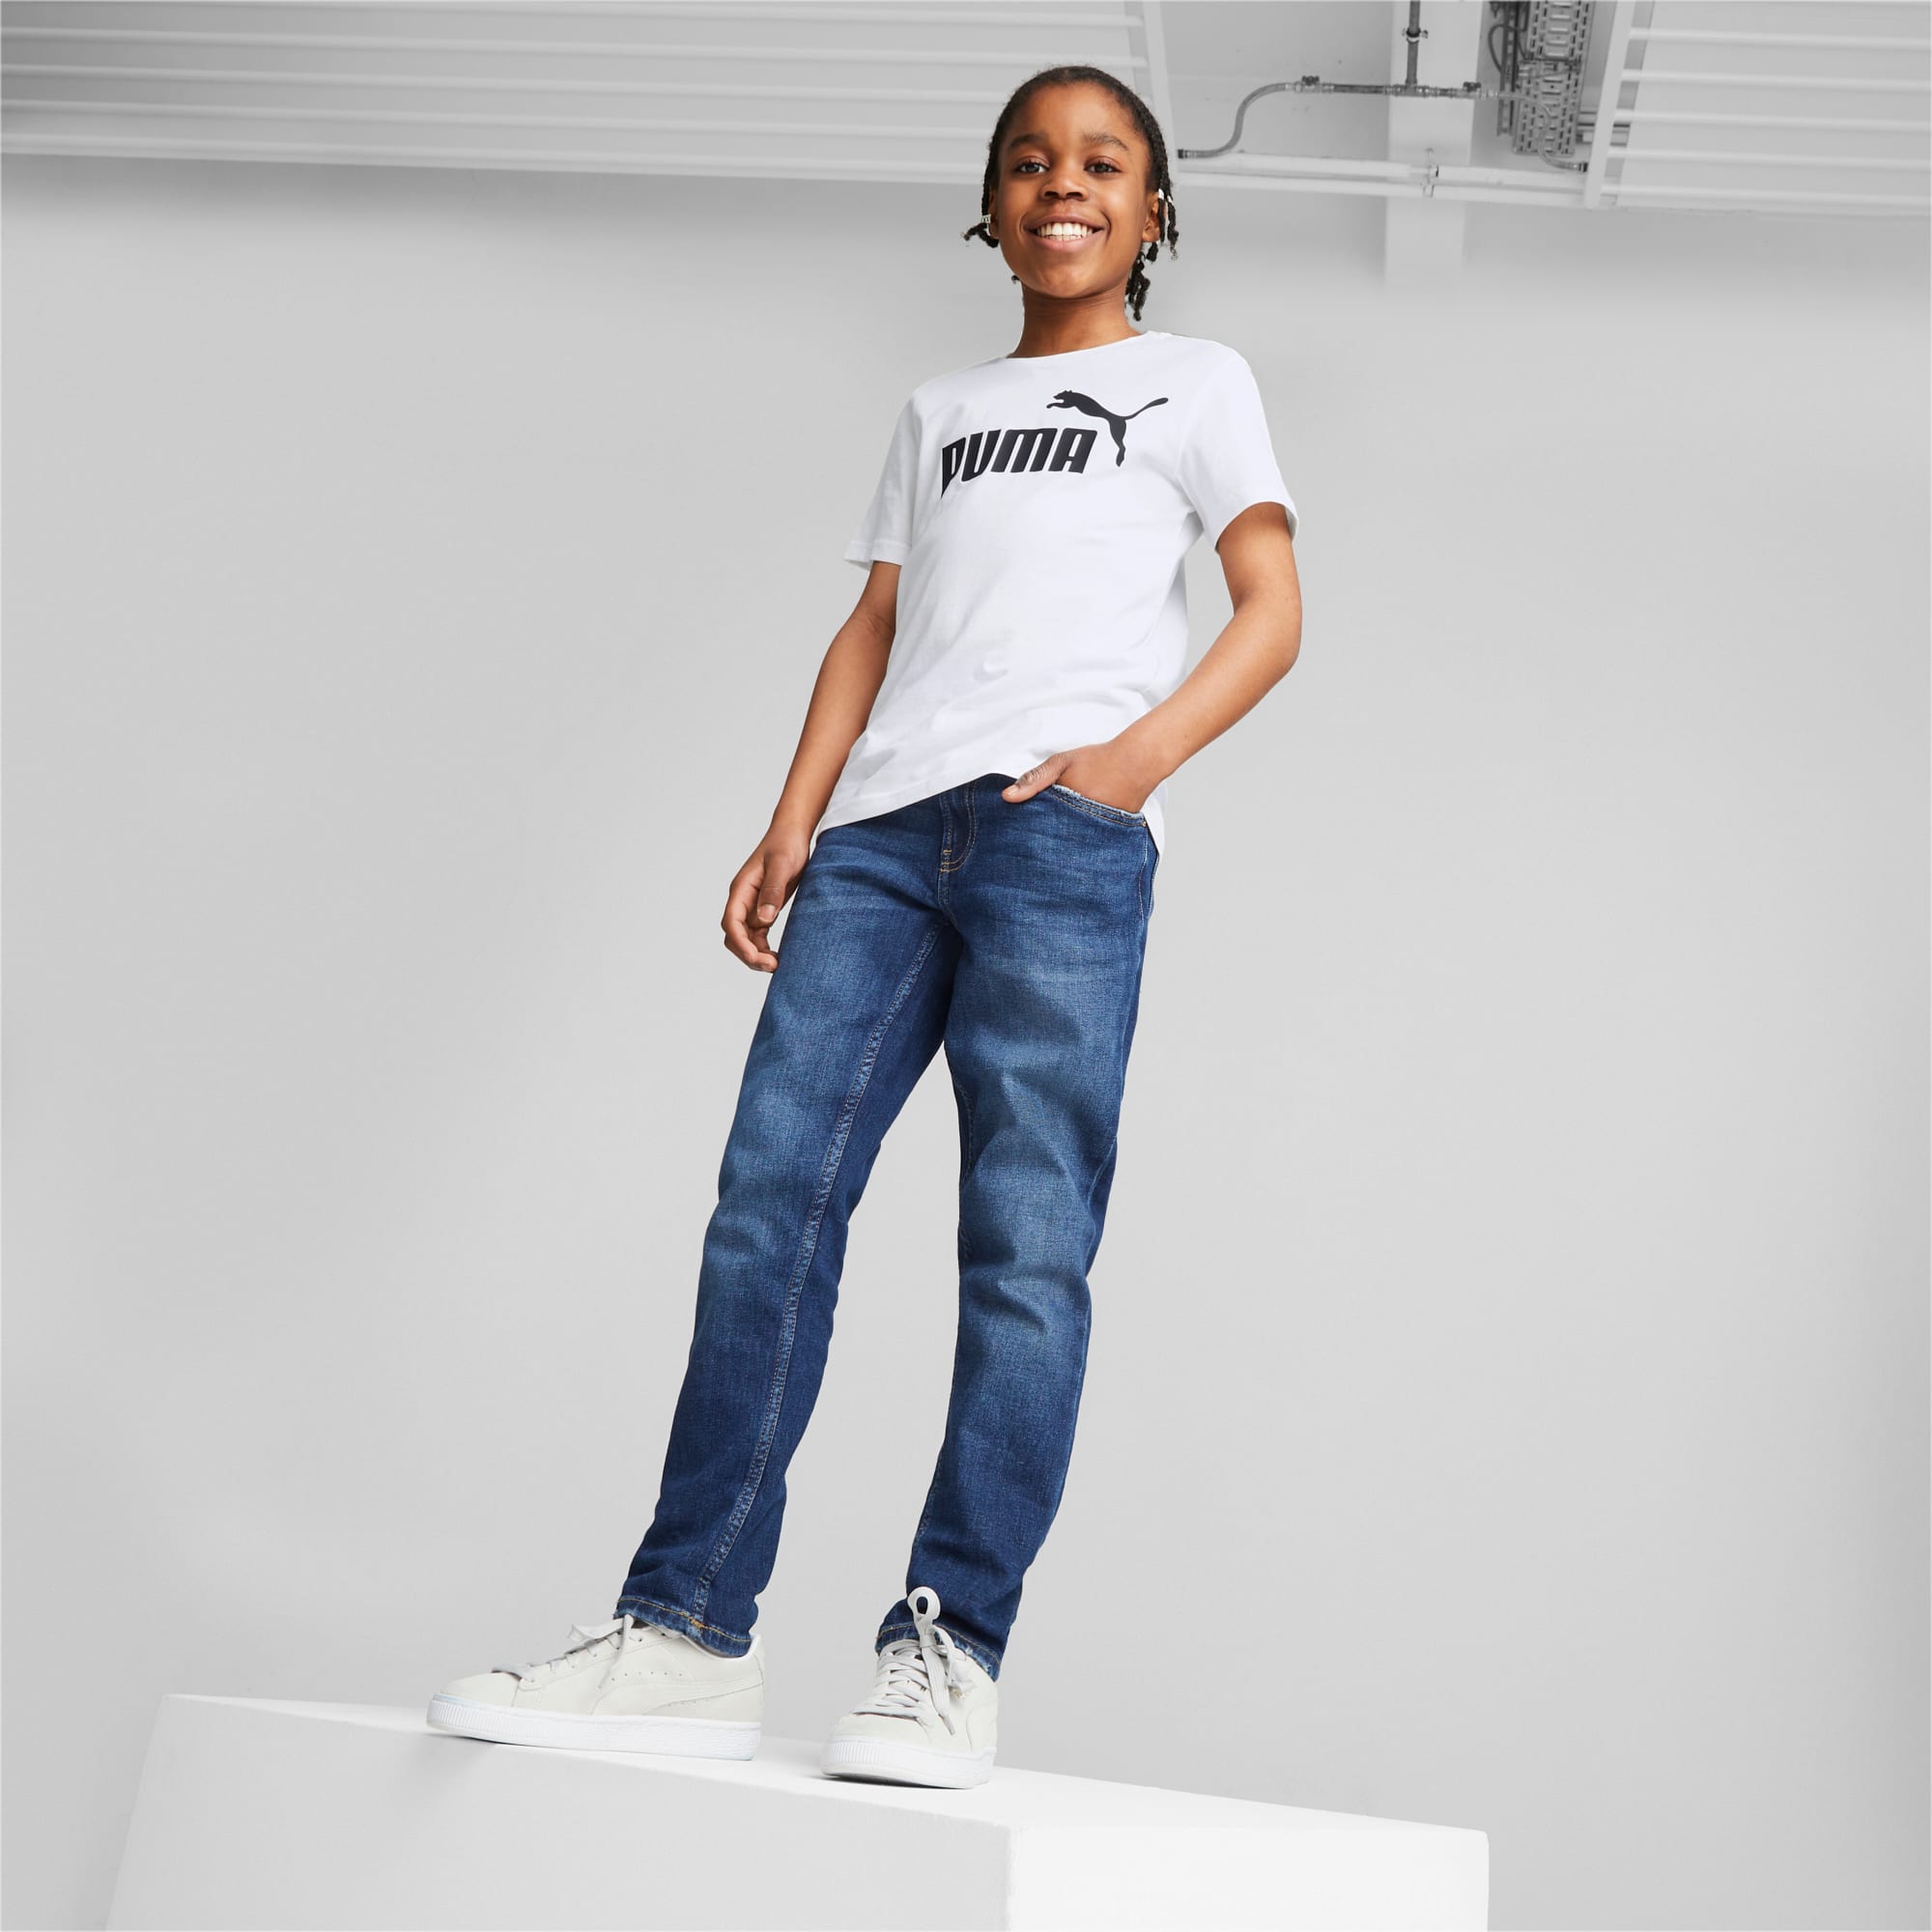 PUMA Essentials Jugend T-Shirt Mit Logo Für Kinder, Weiß, Größe: 104, Kleidung